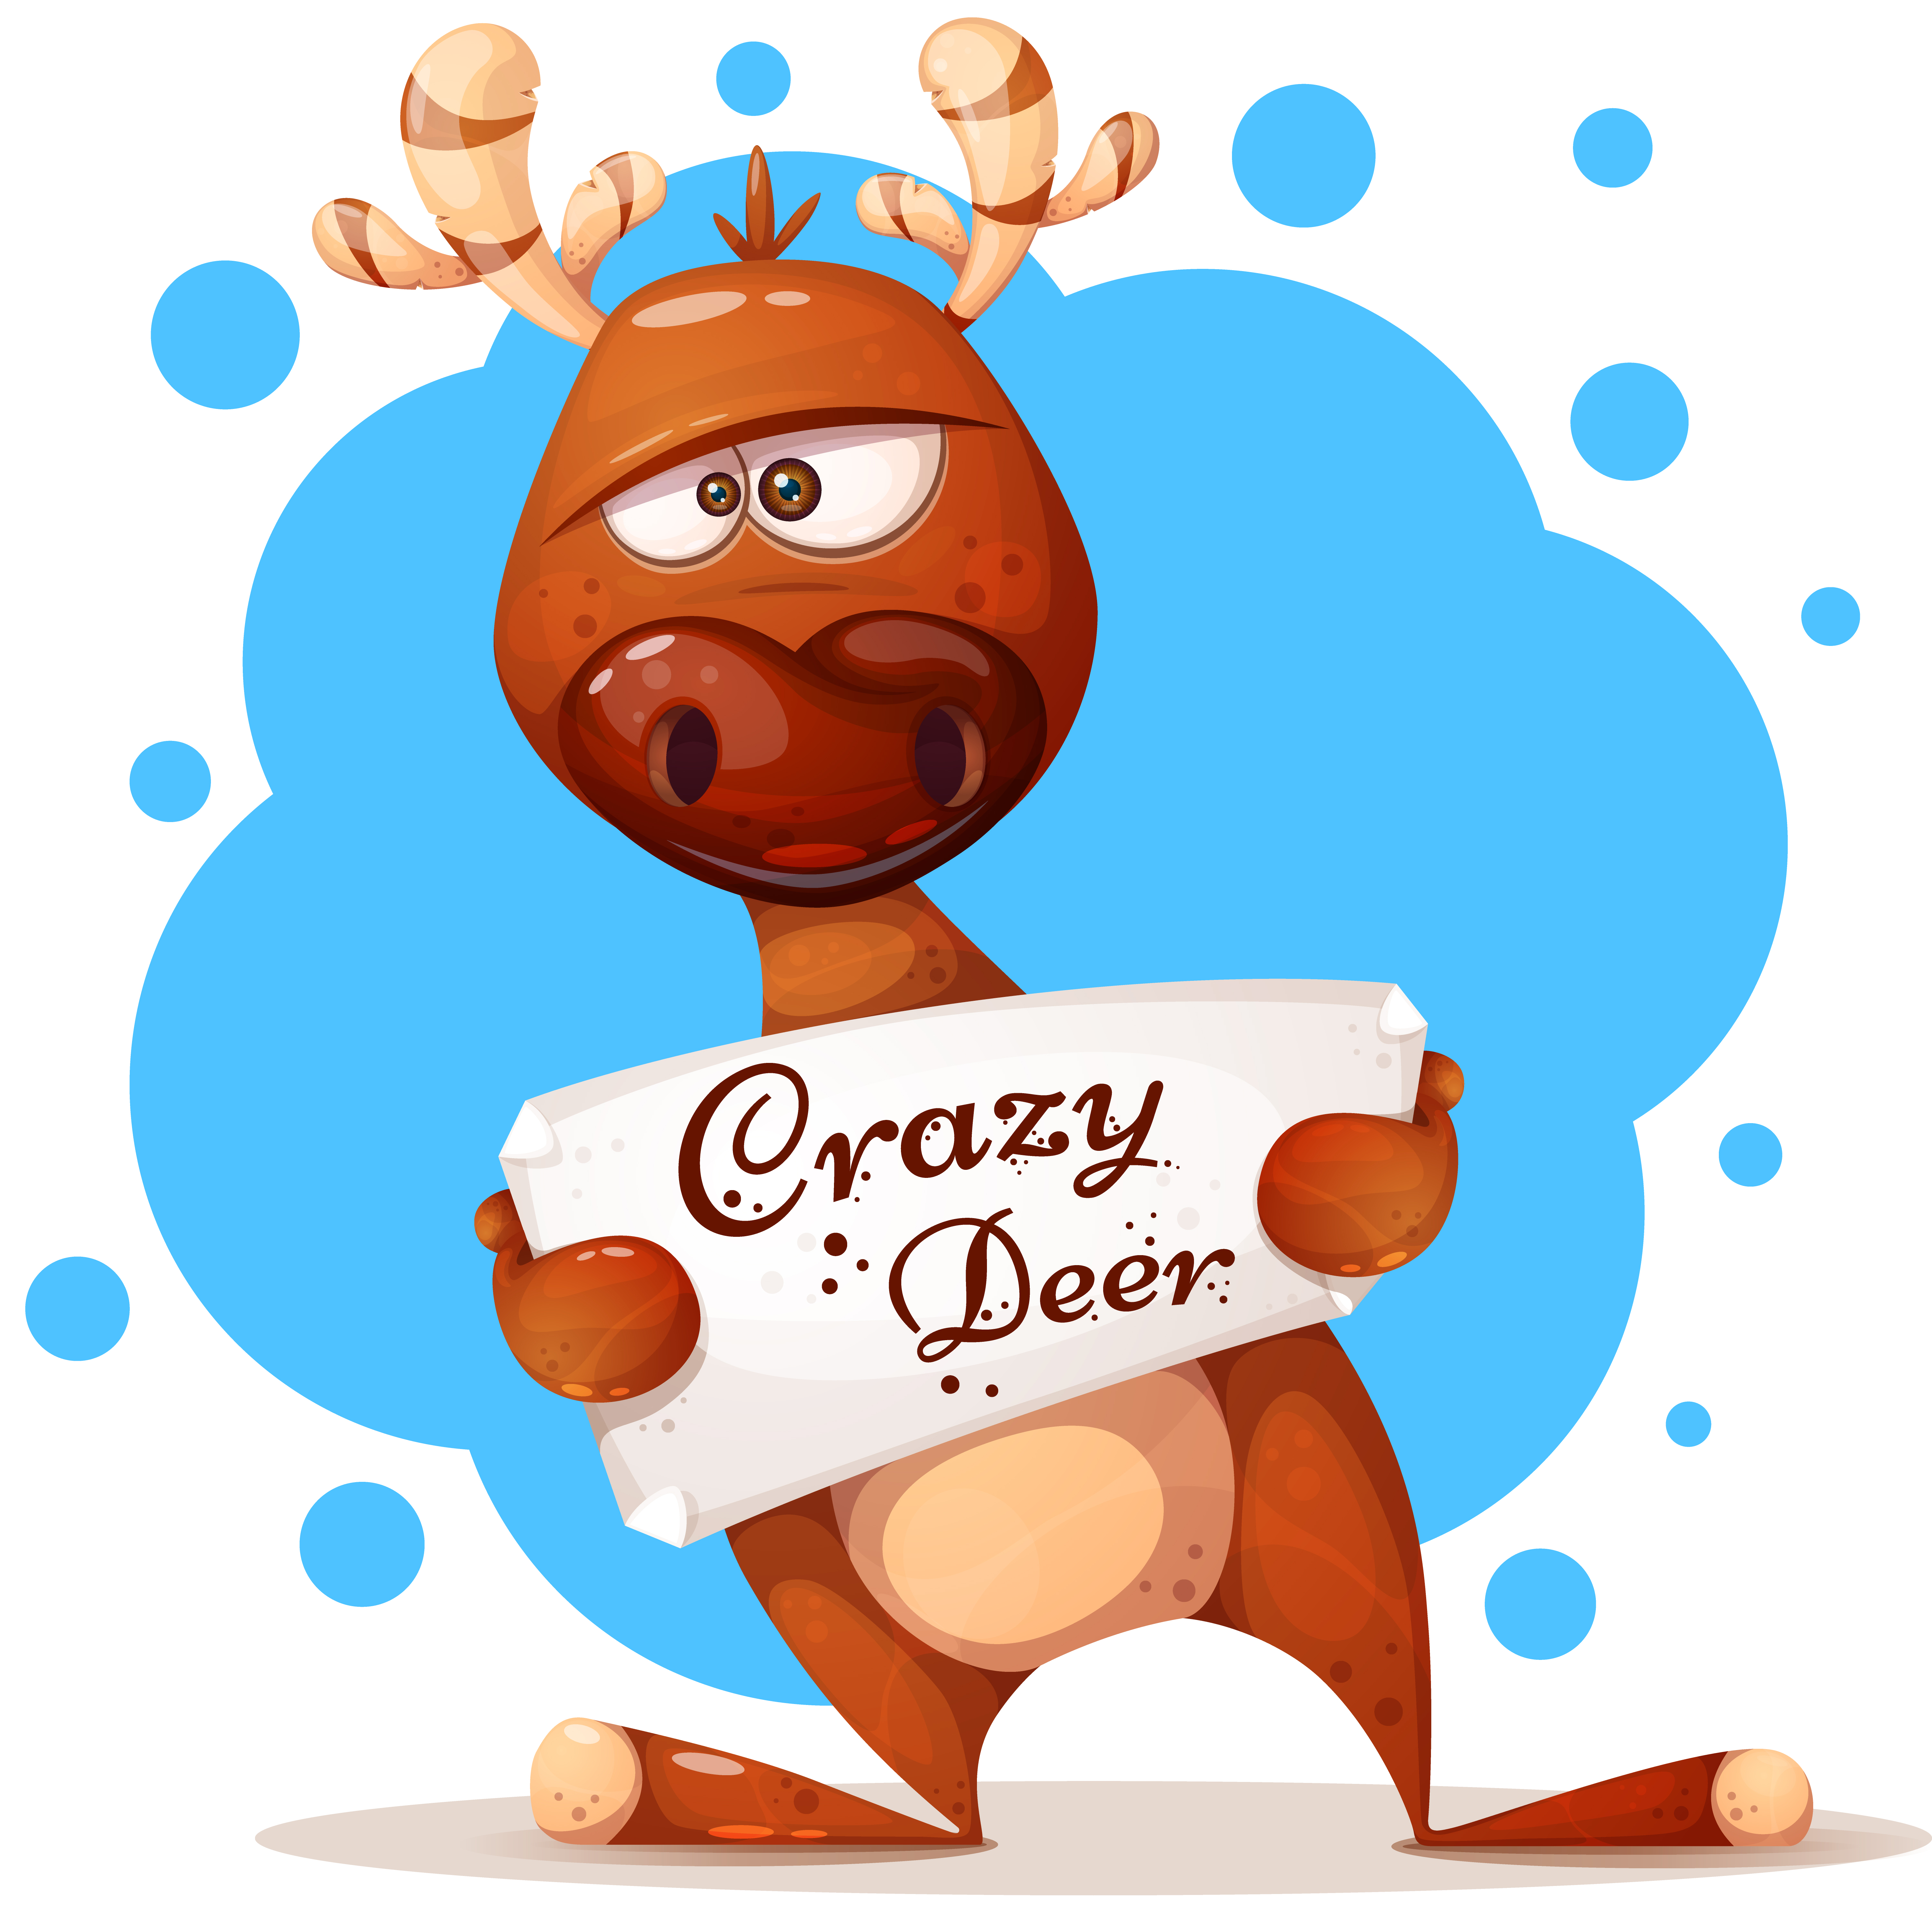 Crazy deer cartoon vector